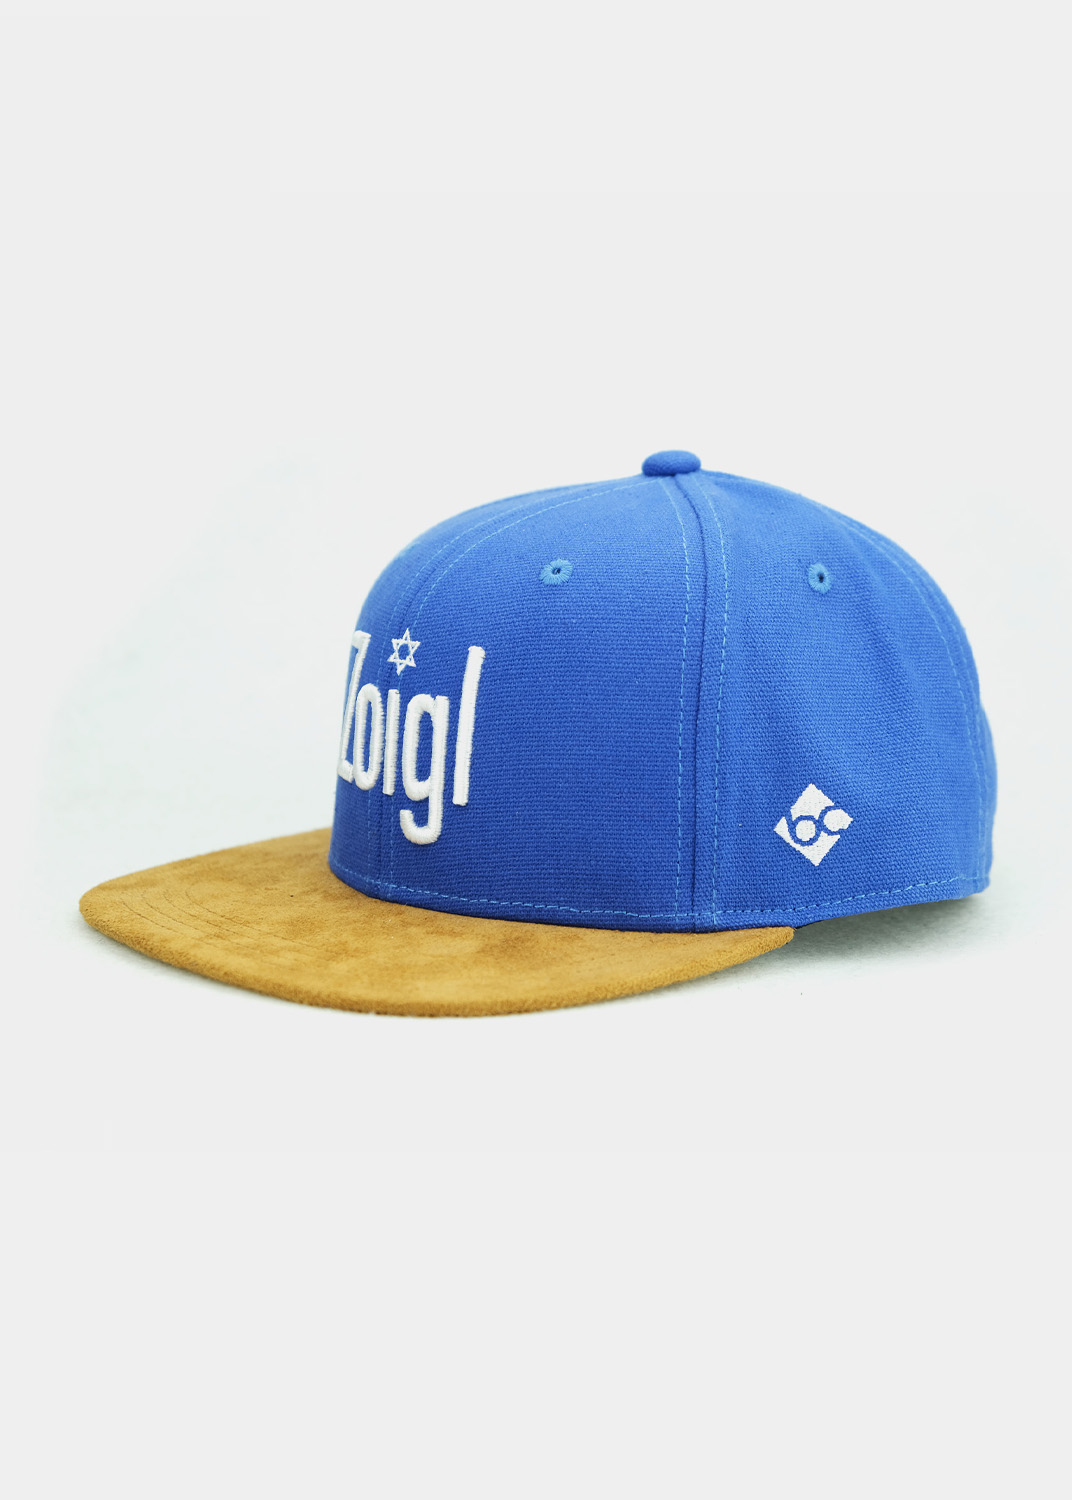 Bavarian Caps - blau \